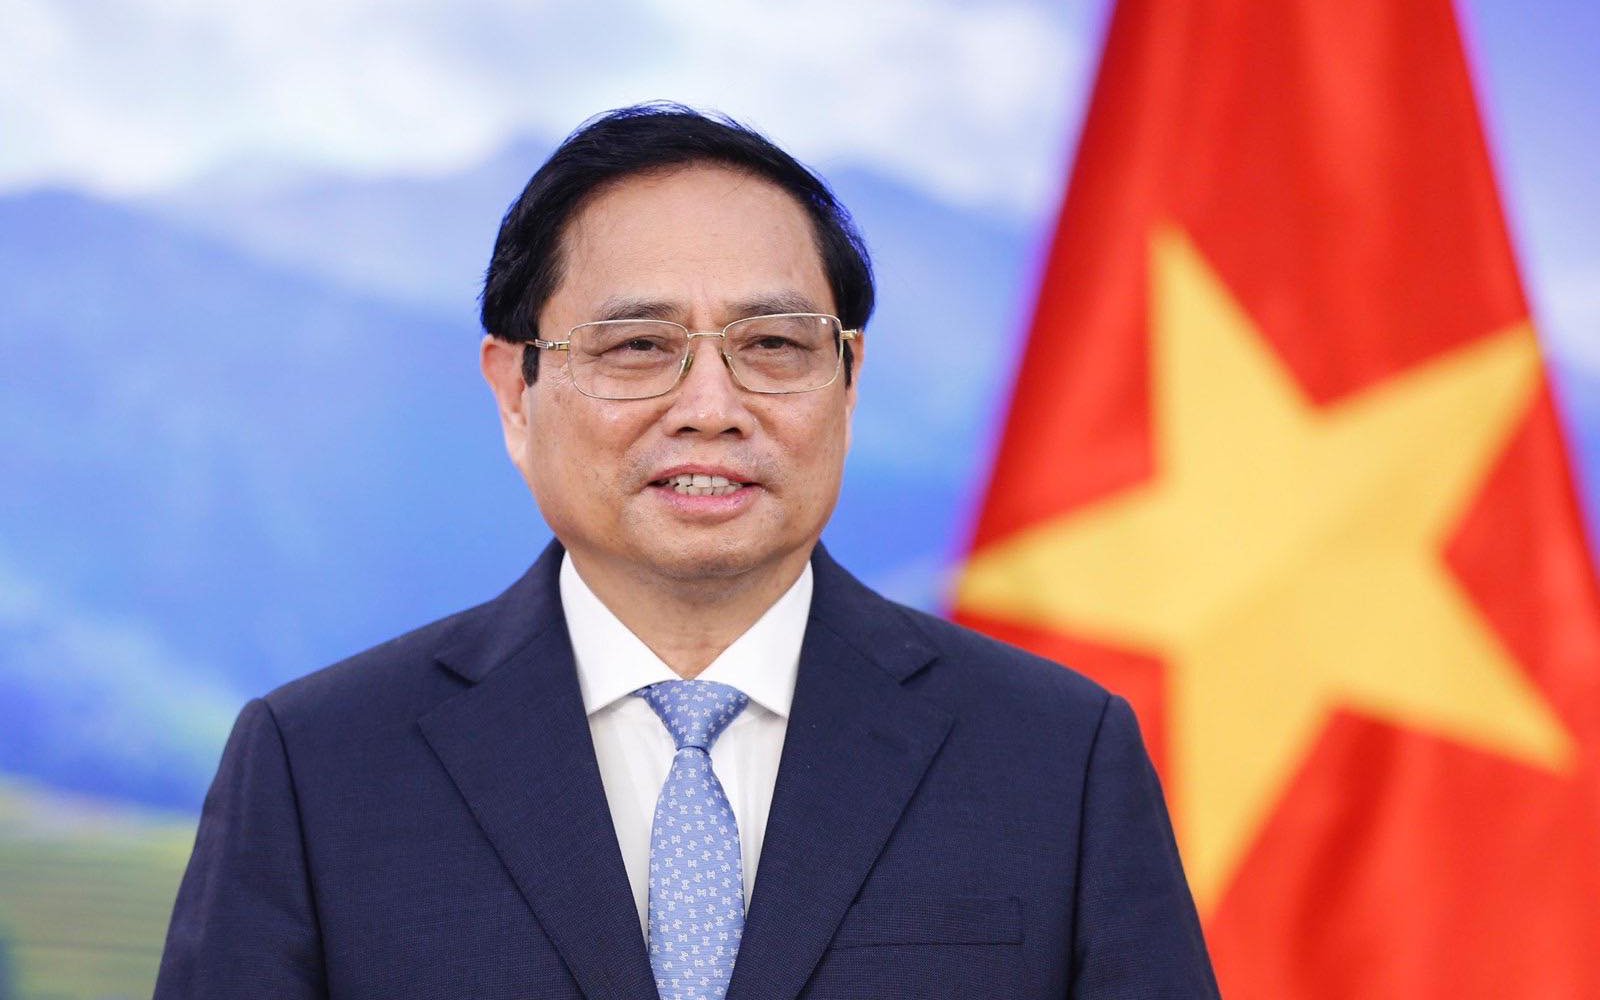 范明正总理将正式访问柬埔寨并出席东盟峰会